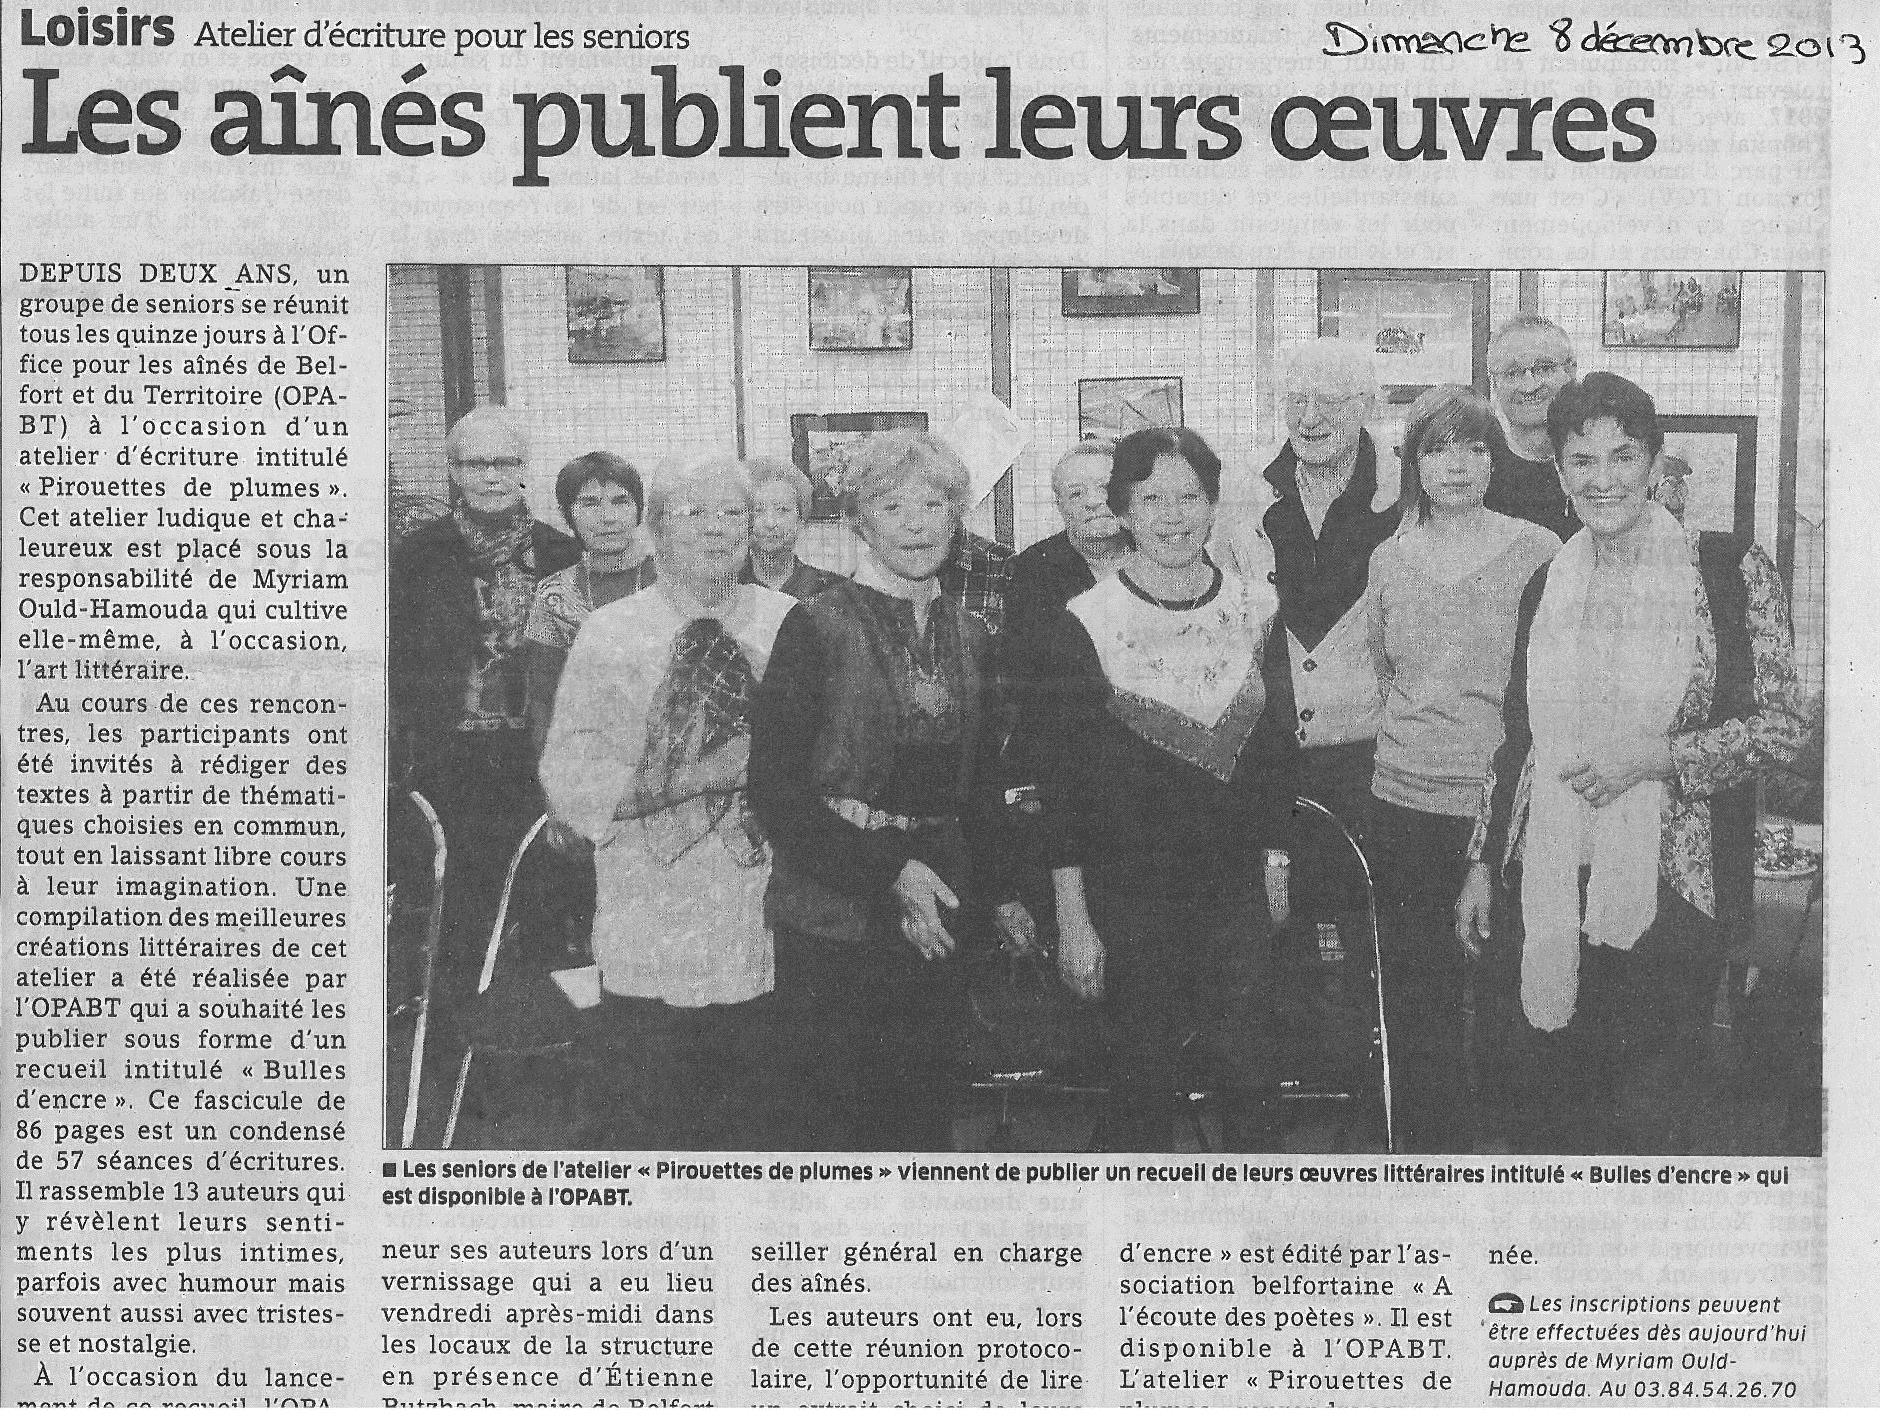 "Les aînés publient leurs oeuvres" - Est Républicain 08/12/2013